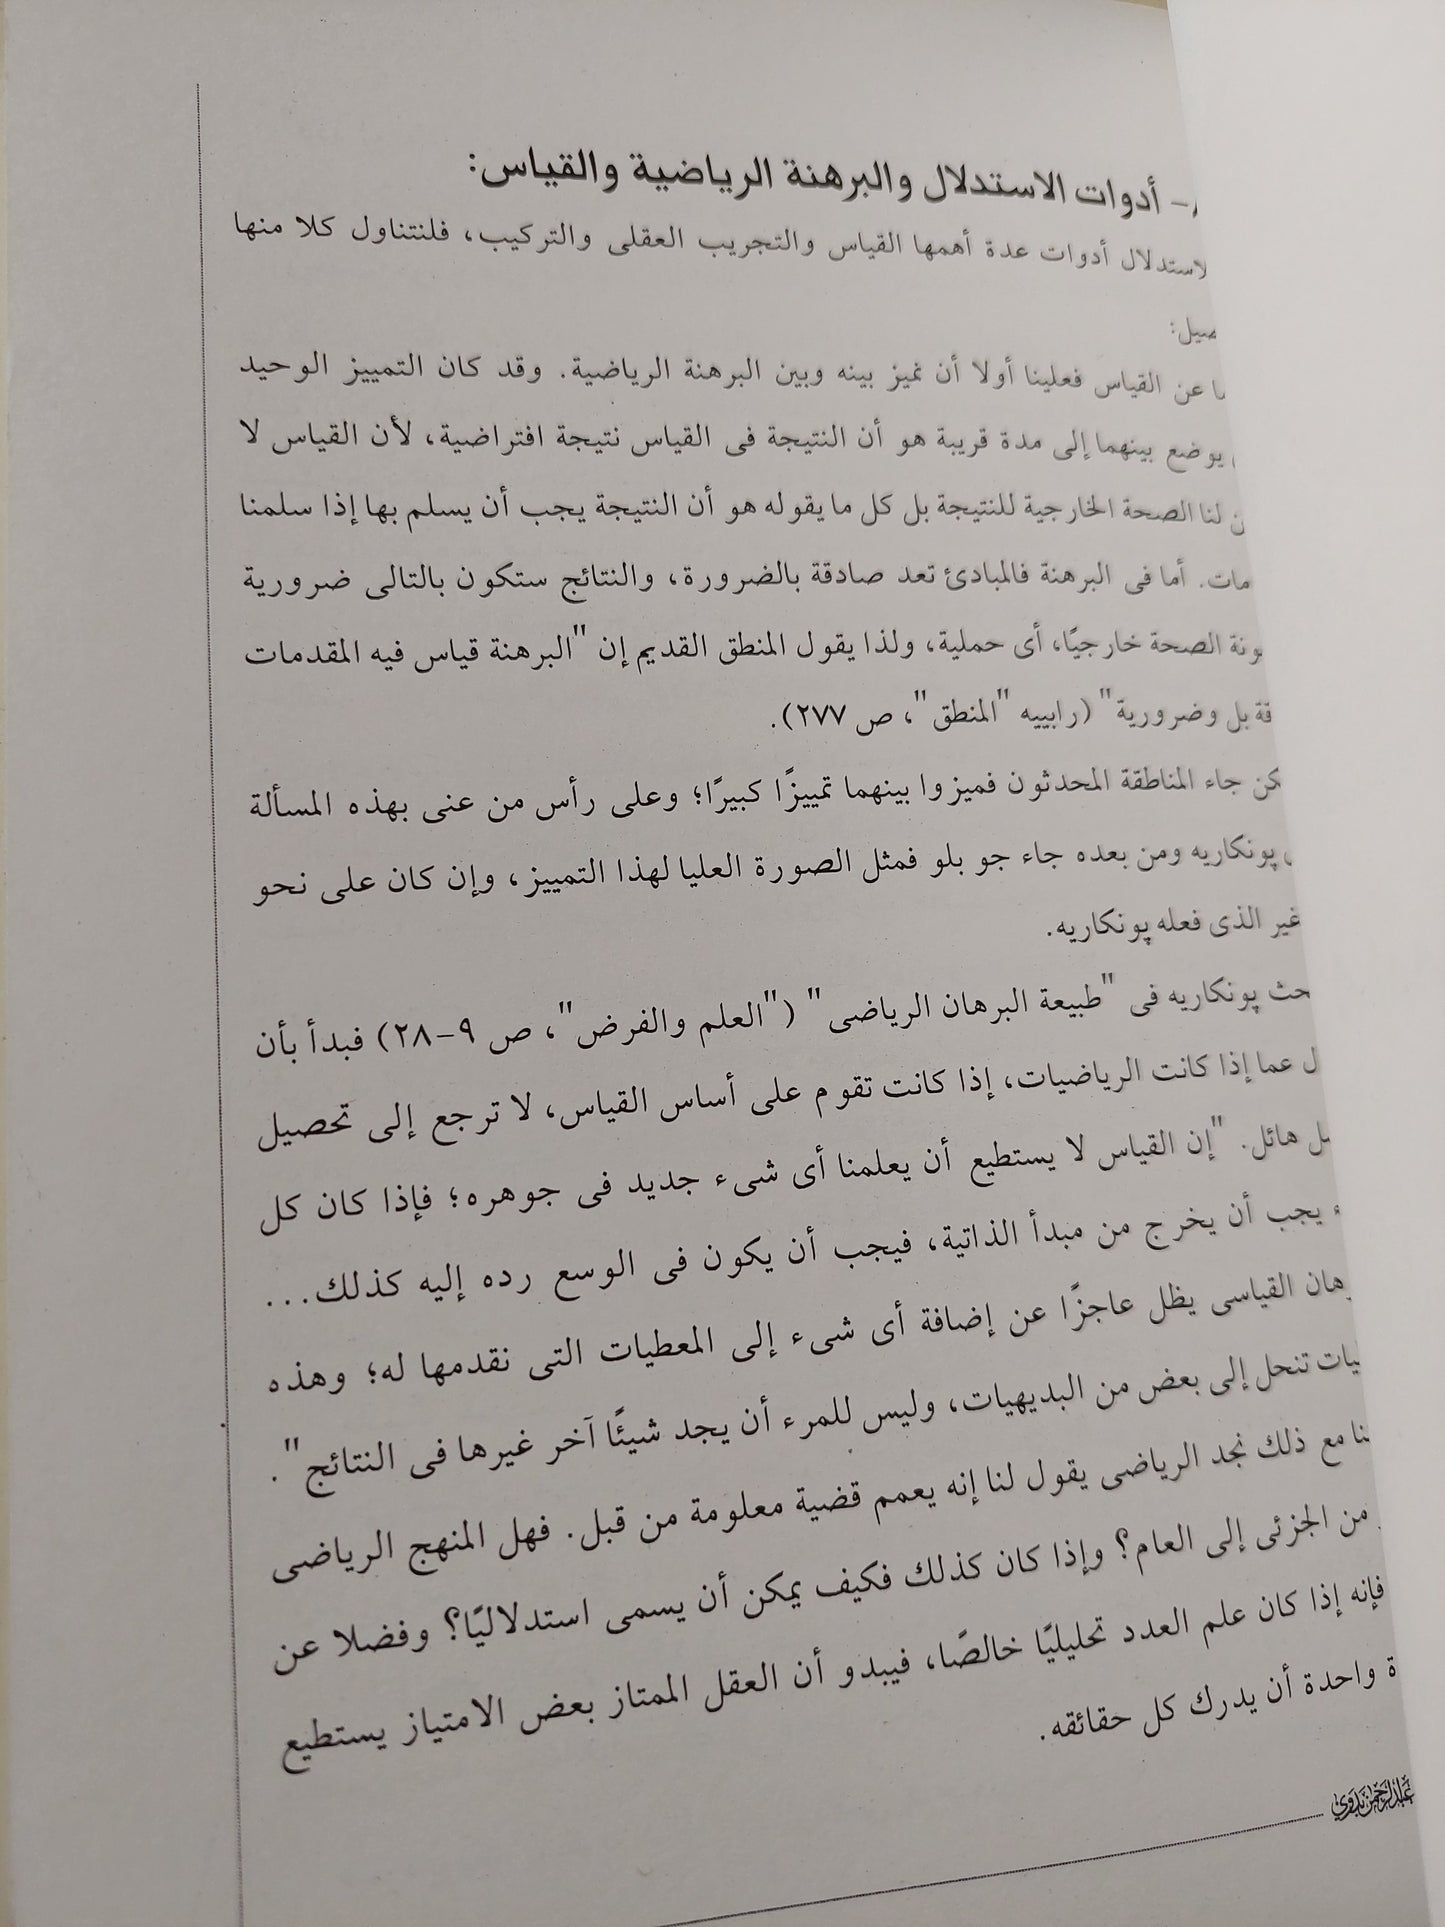 مناهج البحث العلمي / د. عبد الرحمن بدوي